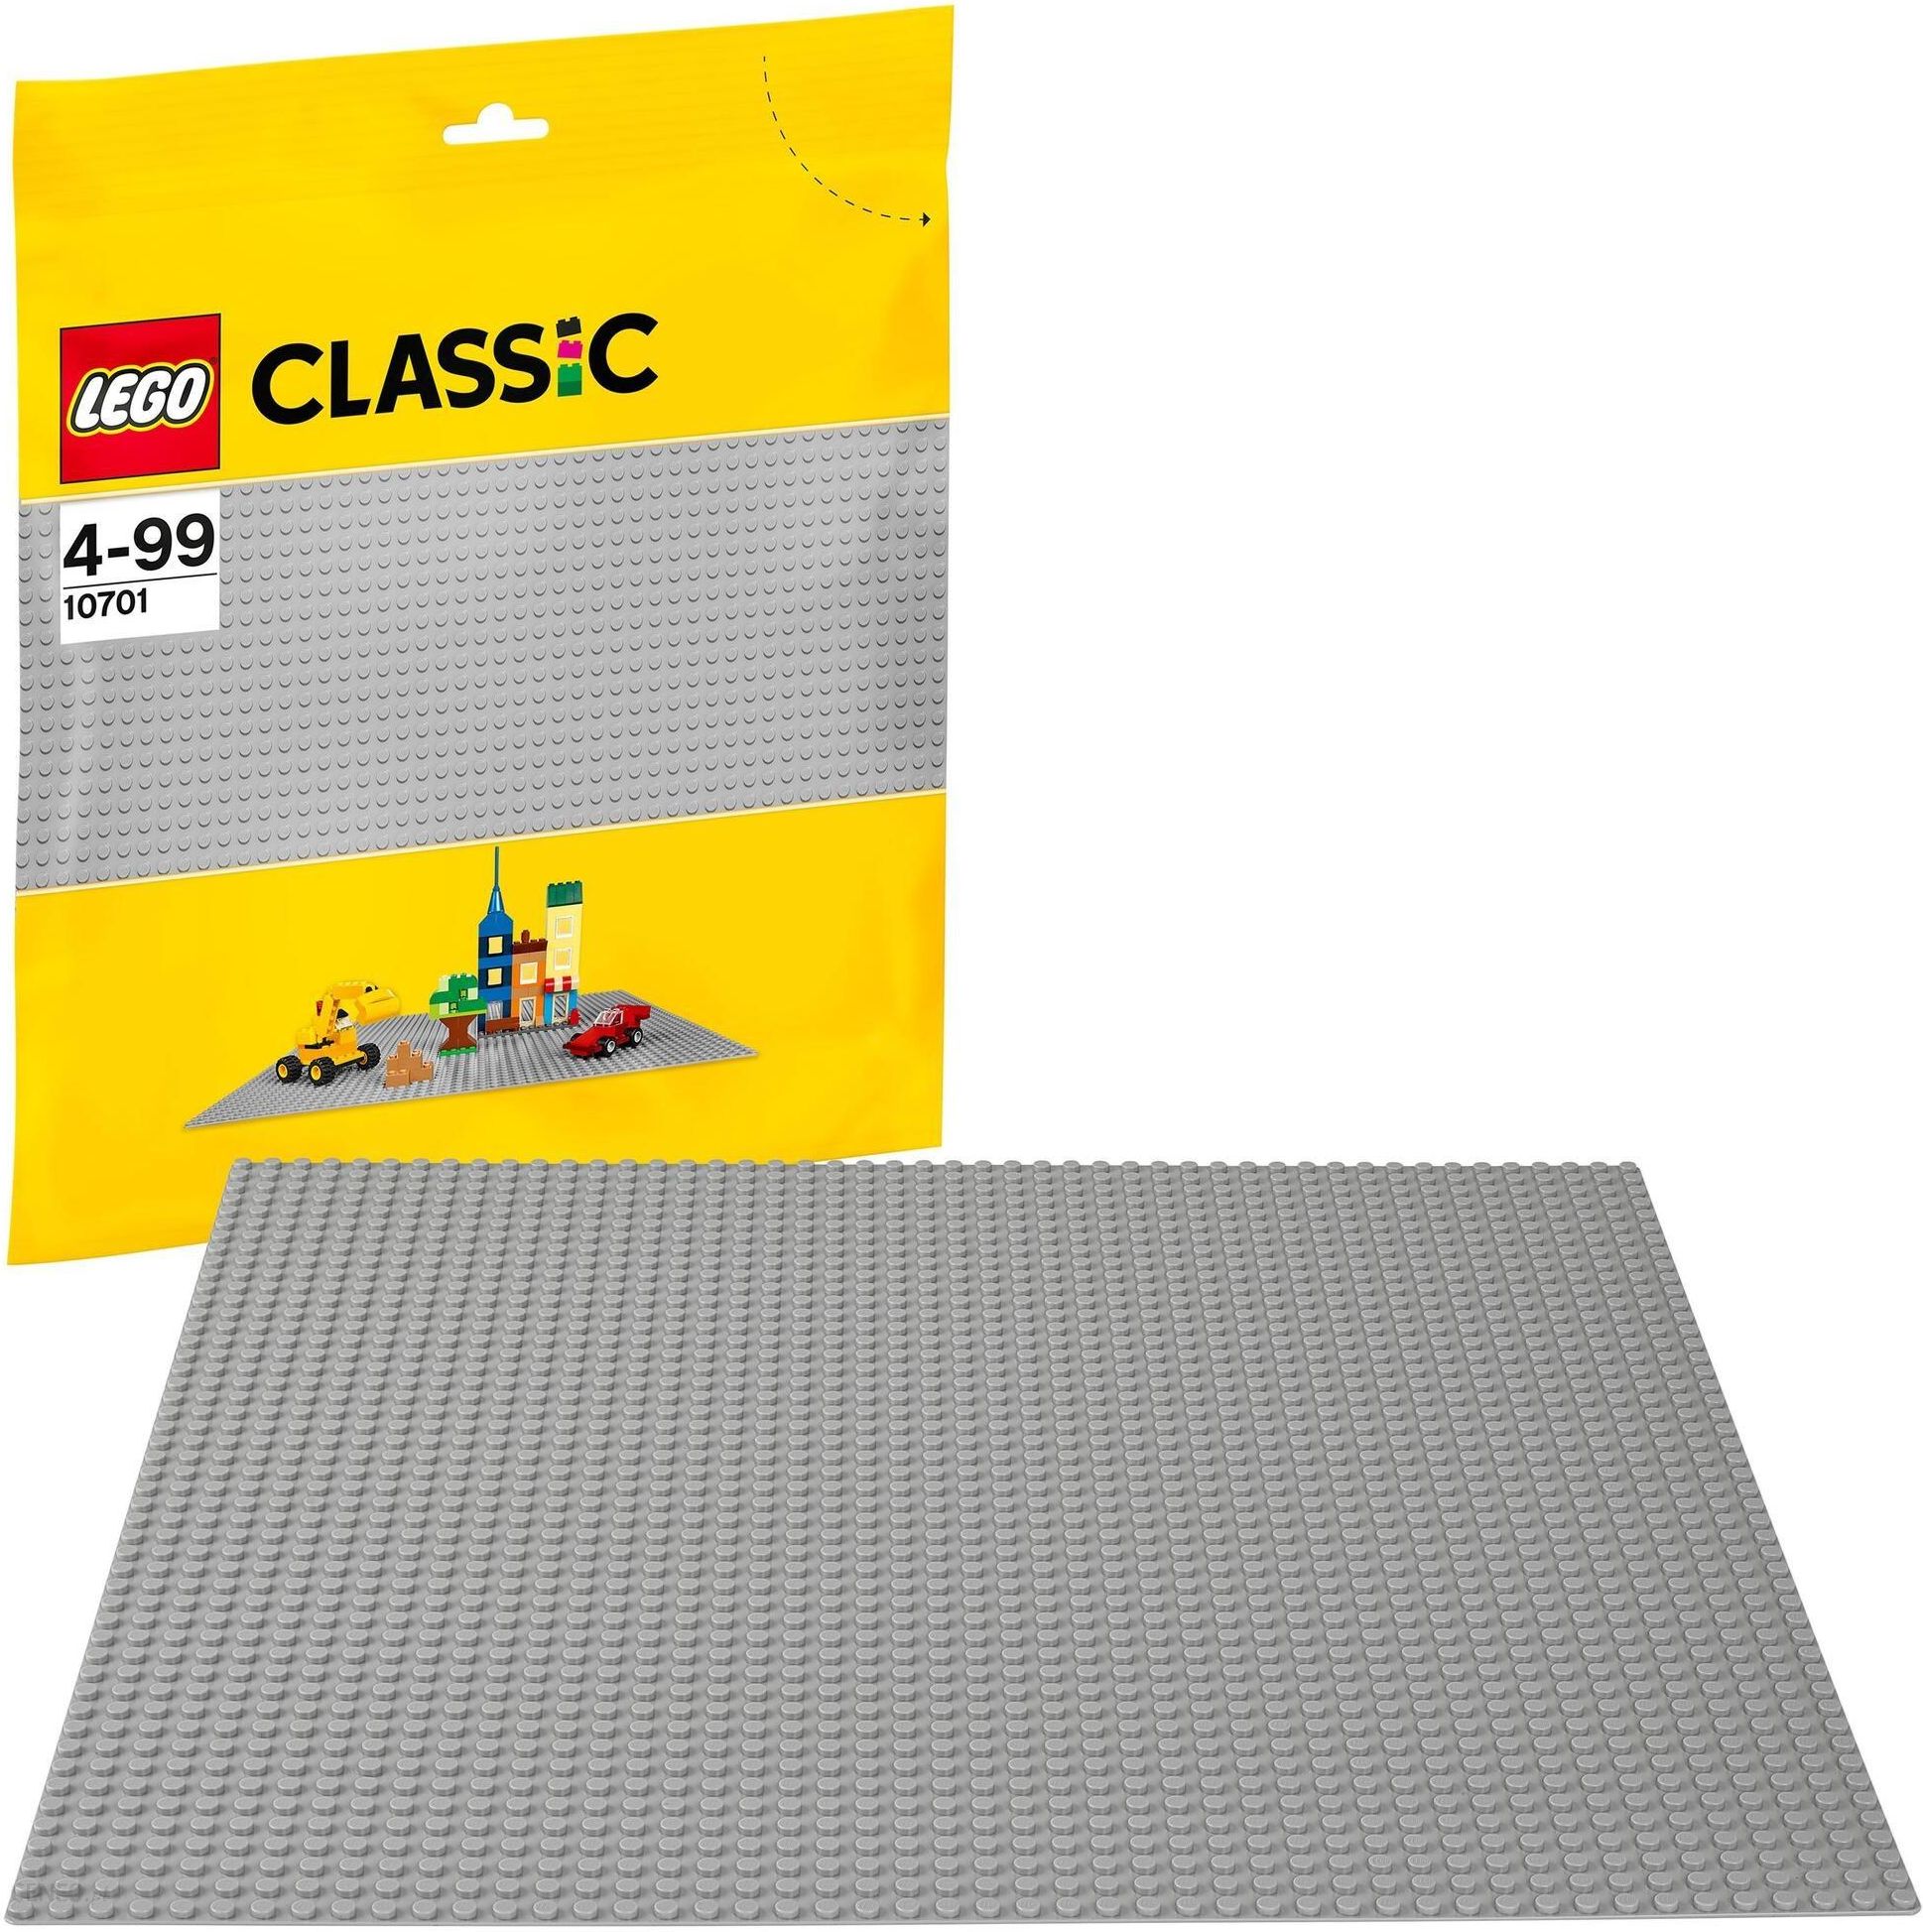 LEGO 11024 CLASSIC Duża Podstawka konstrukcyjna Szara płytka do